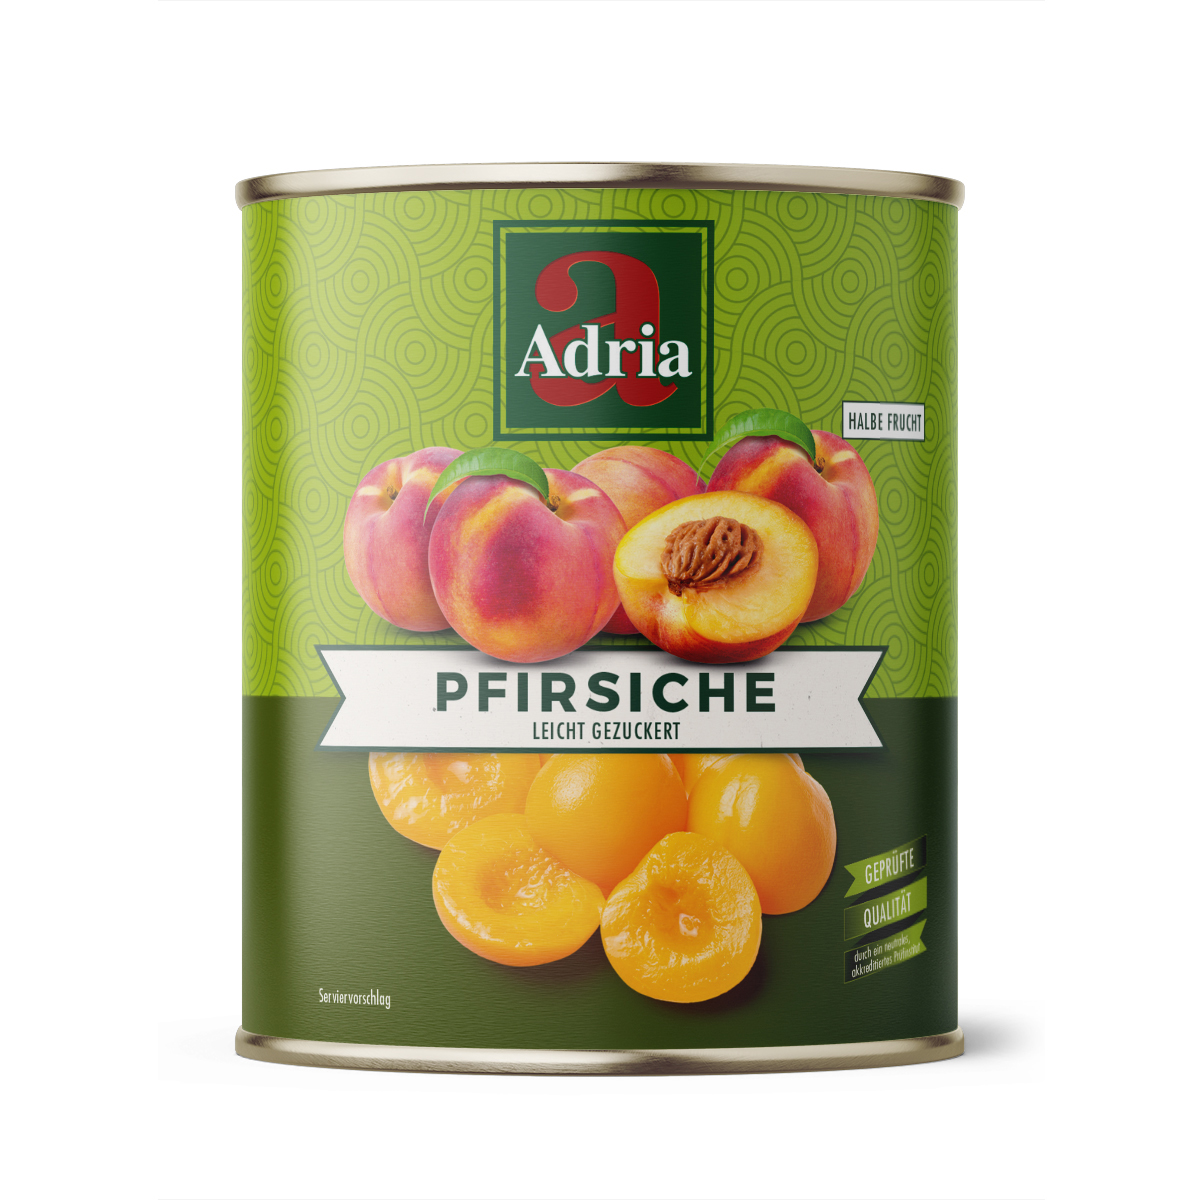 Pfirsiche 1/2 Frucht leicht gezuckert 850ml